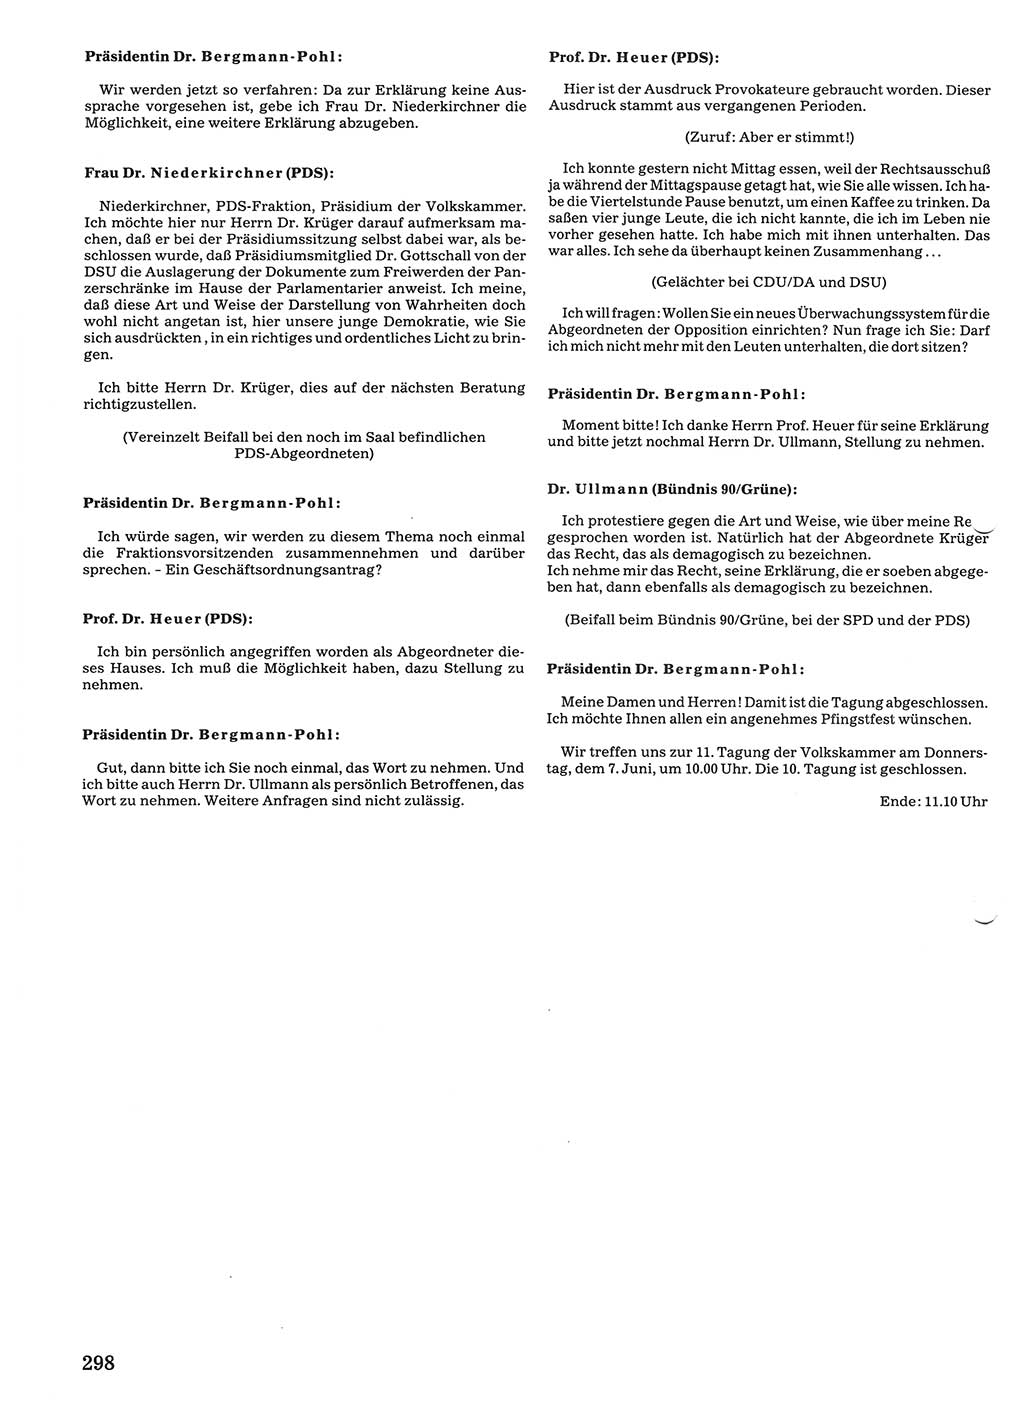 Tagungen der Volkskammer (VK) der Deutschen Demokratischen Republik (DDR), 10. Wahlperiode 1990, Seite 298 (VK. DDR 10. WP. 1990, Prot. Tg. 1-38, 5.4.-2.10.1990, S. 298)